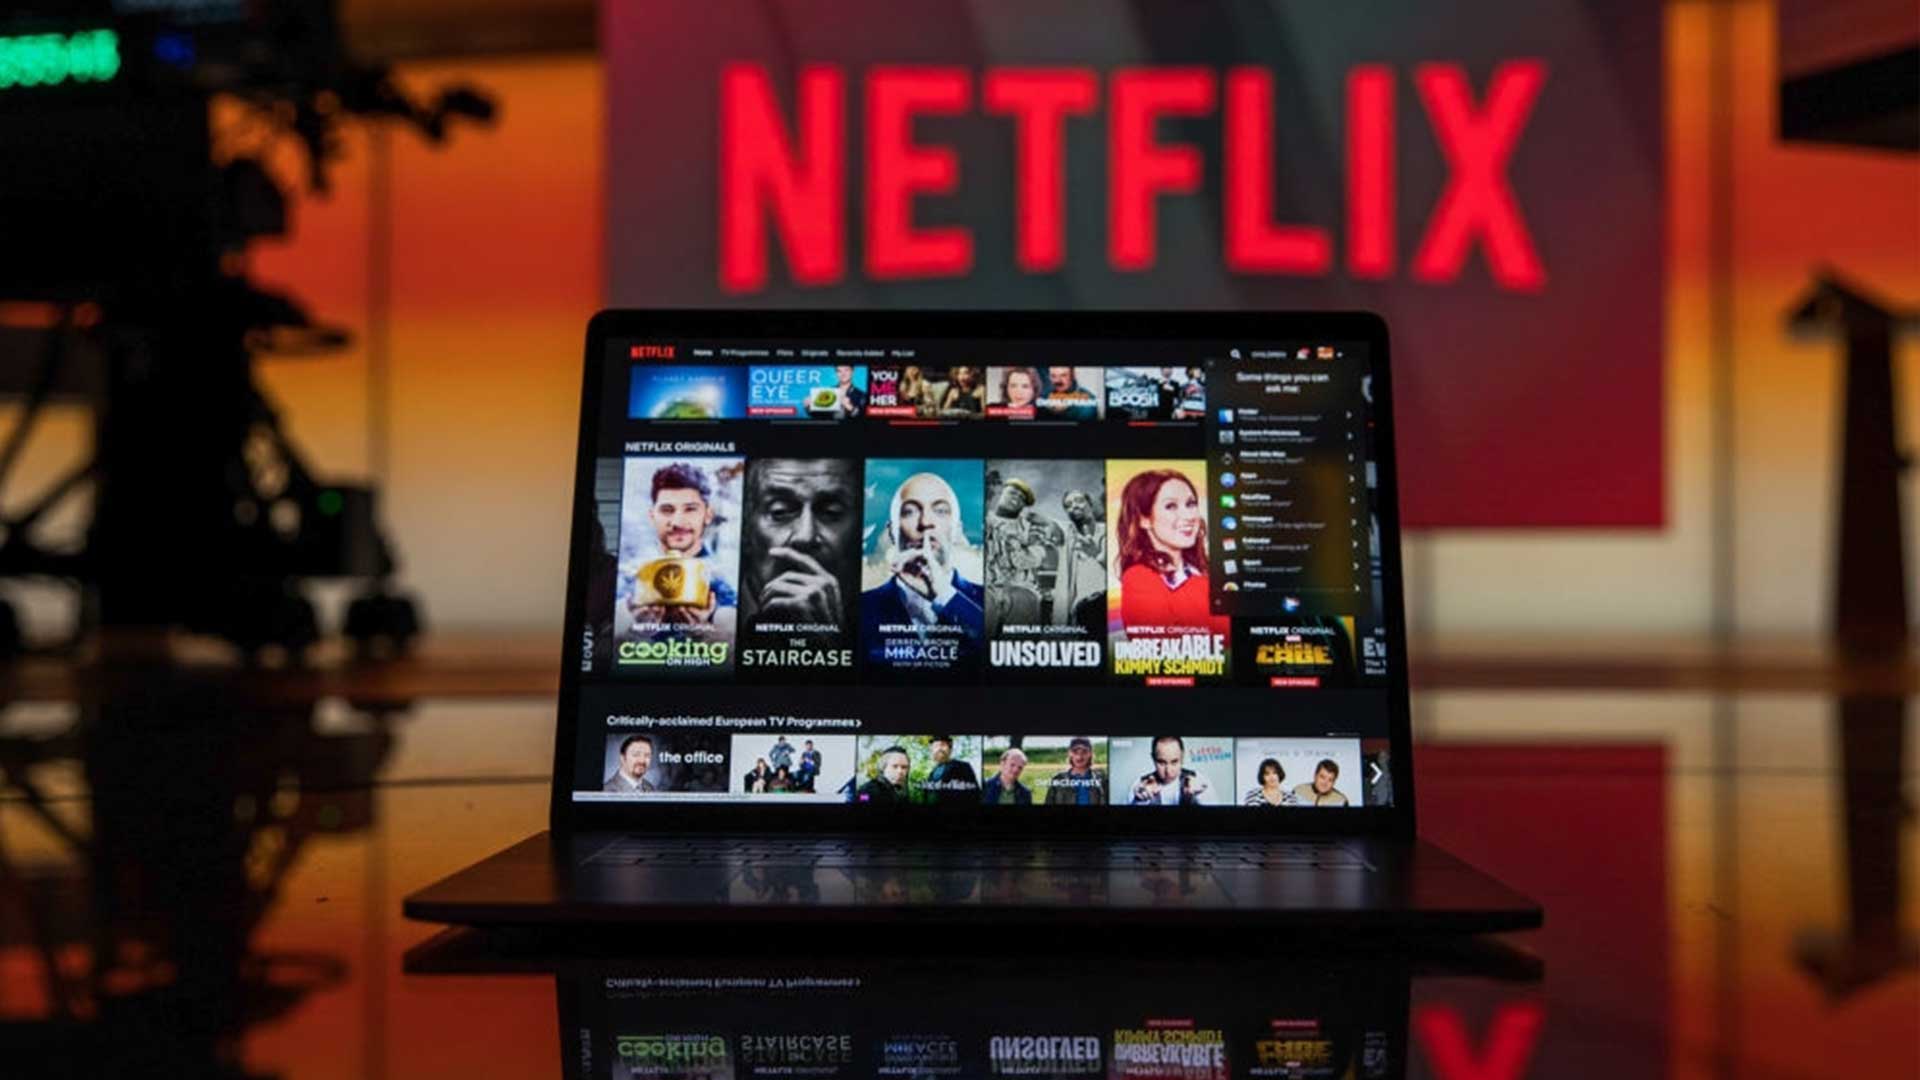 Descubra categorias de filmes com os códigos secretos da Netflix